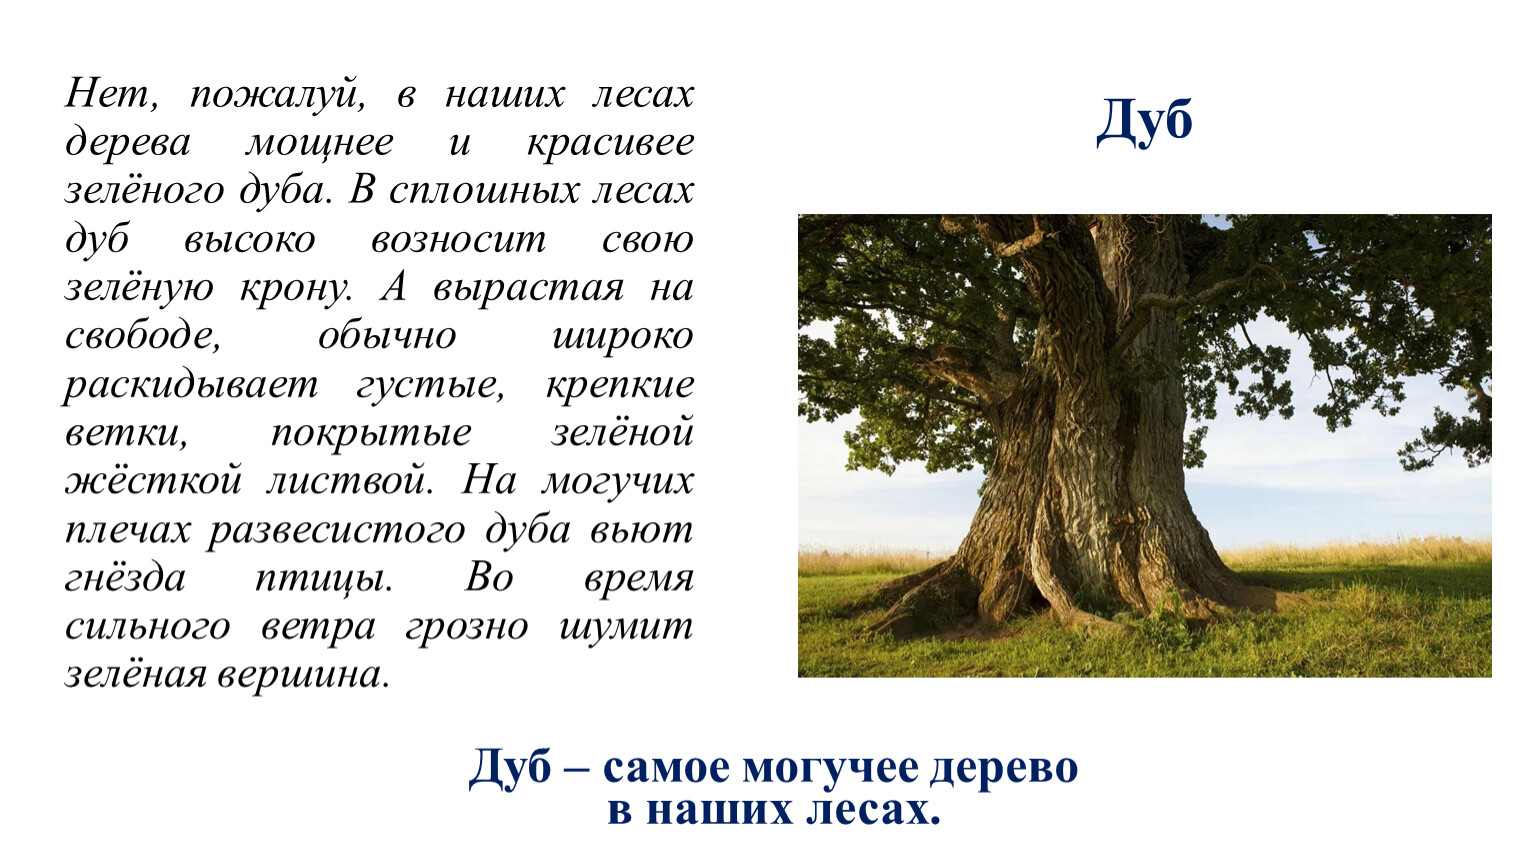 В русских лесах пожалуй нет дерева